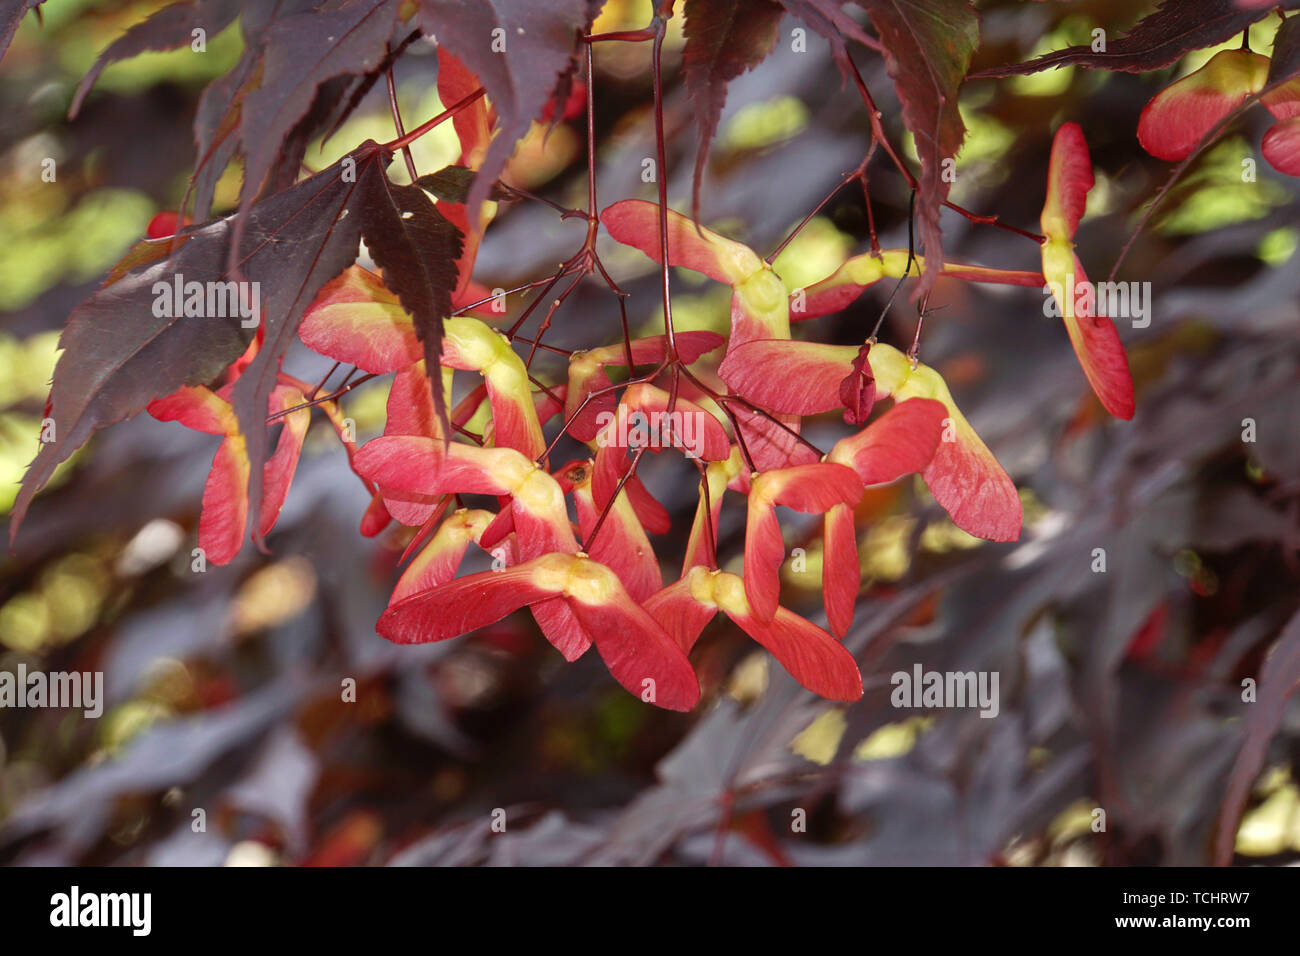 Japanischer Ahorn (Acer japonicum) - Blätter und Früchte Stock Photo